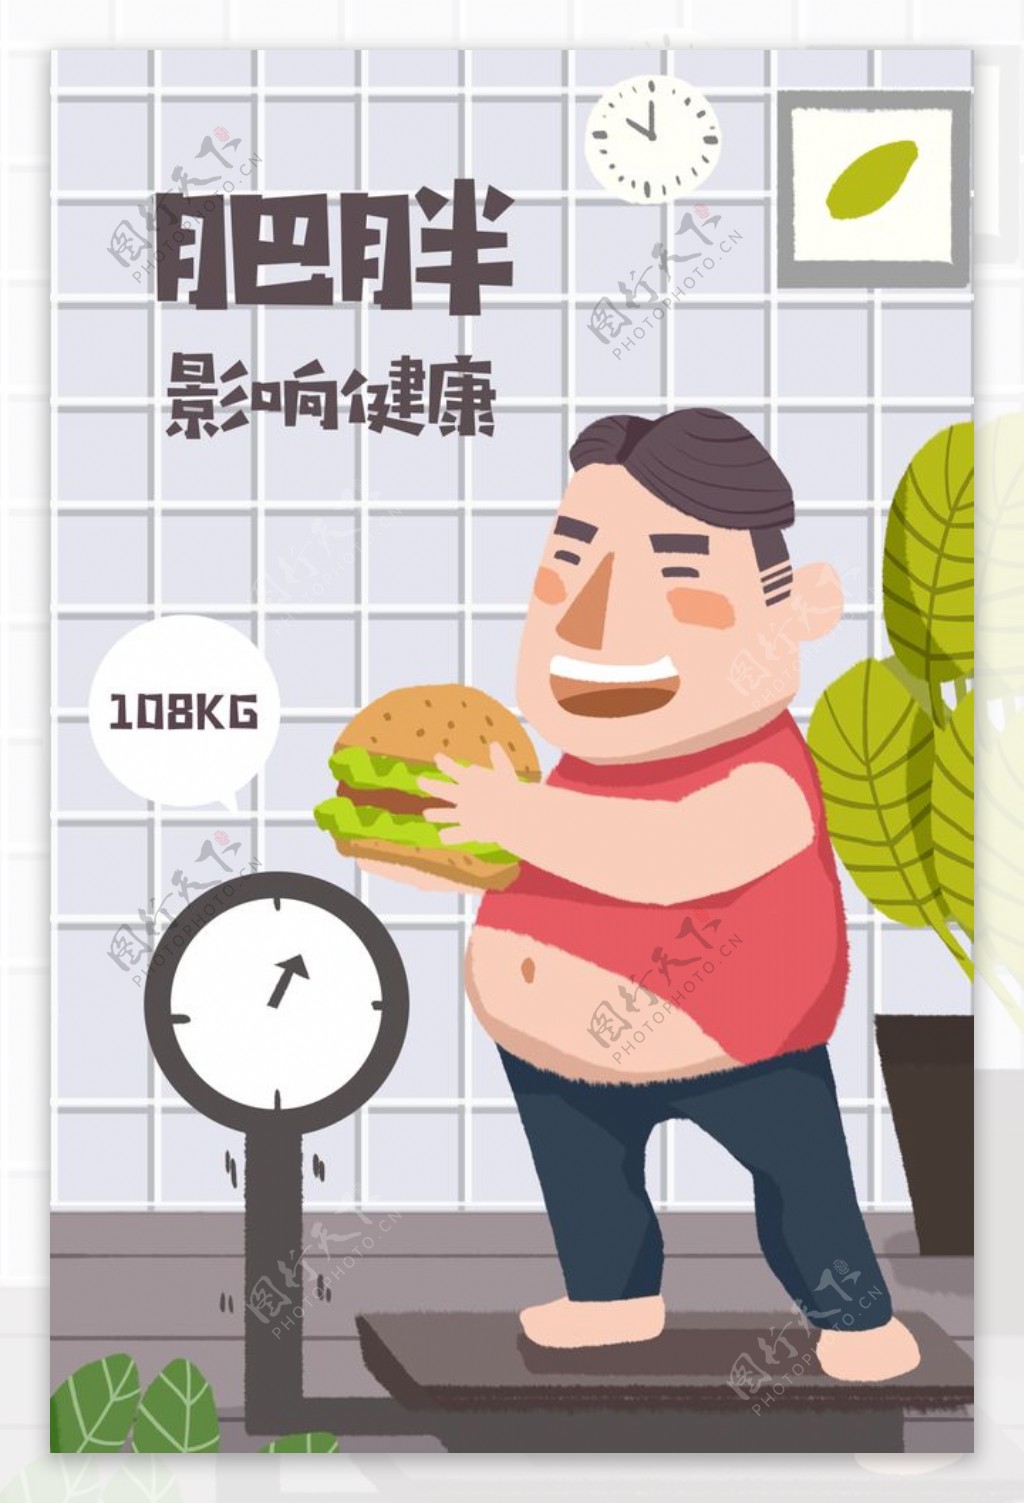 肥胖影响健康插画卡通背景素材